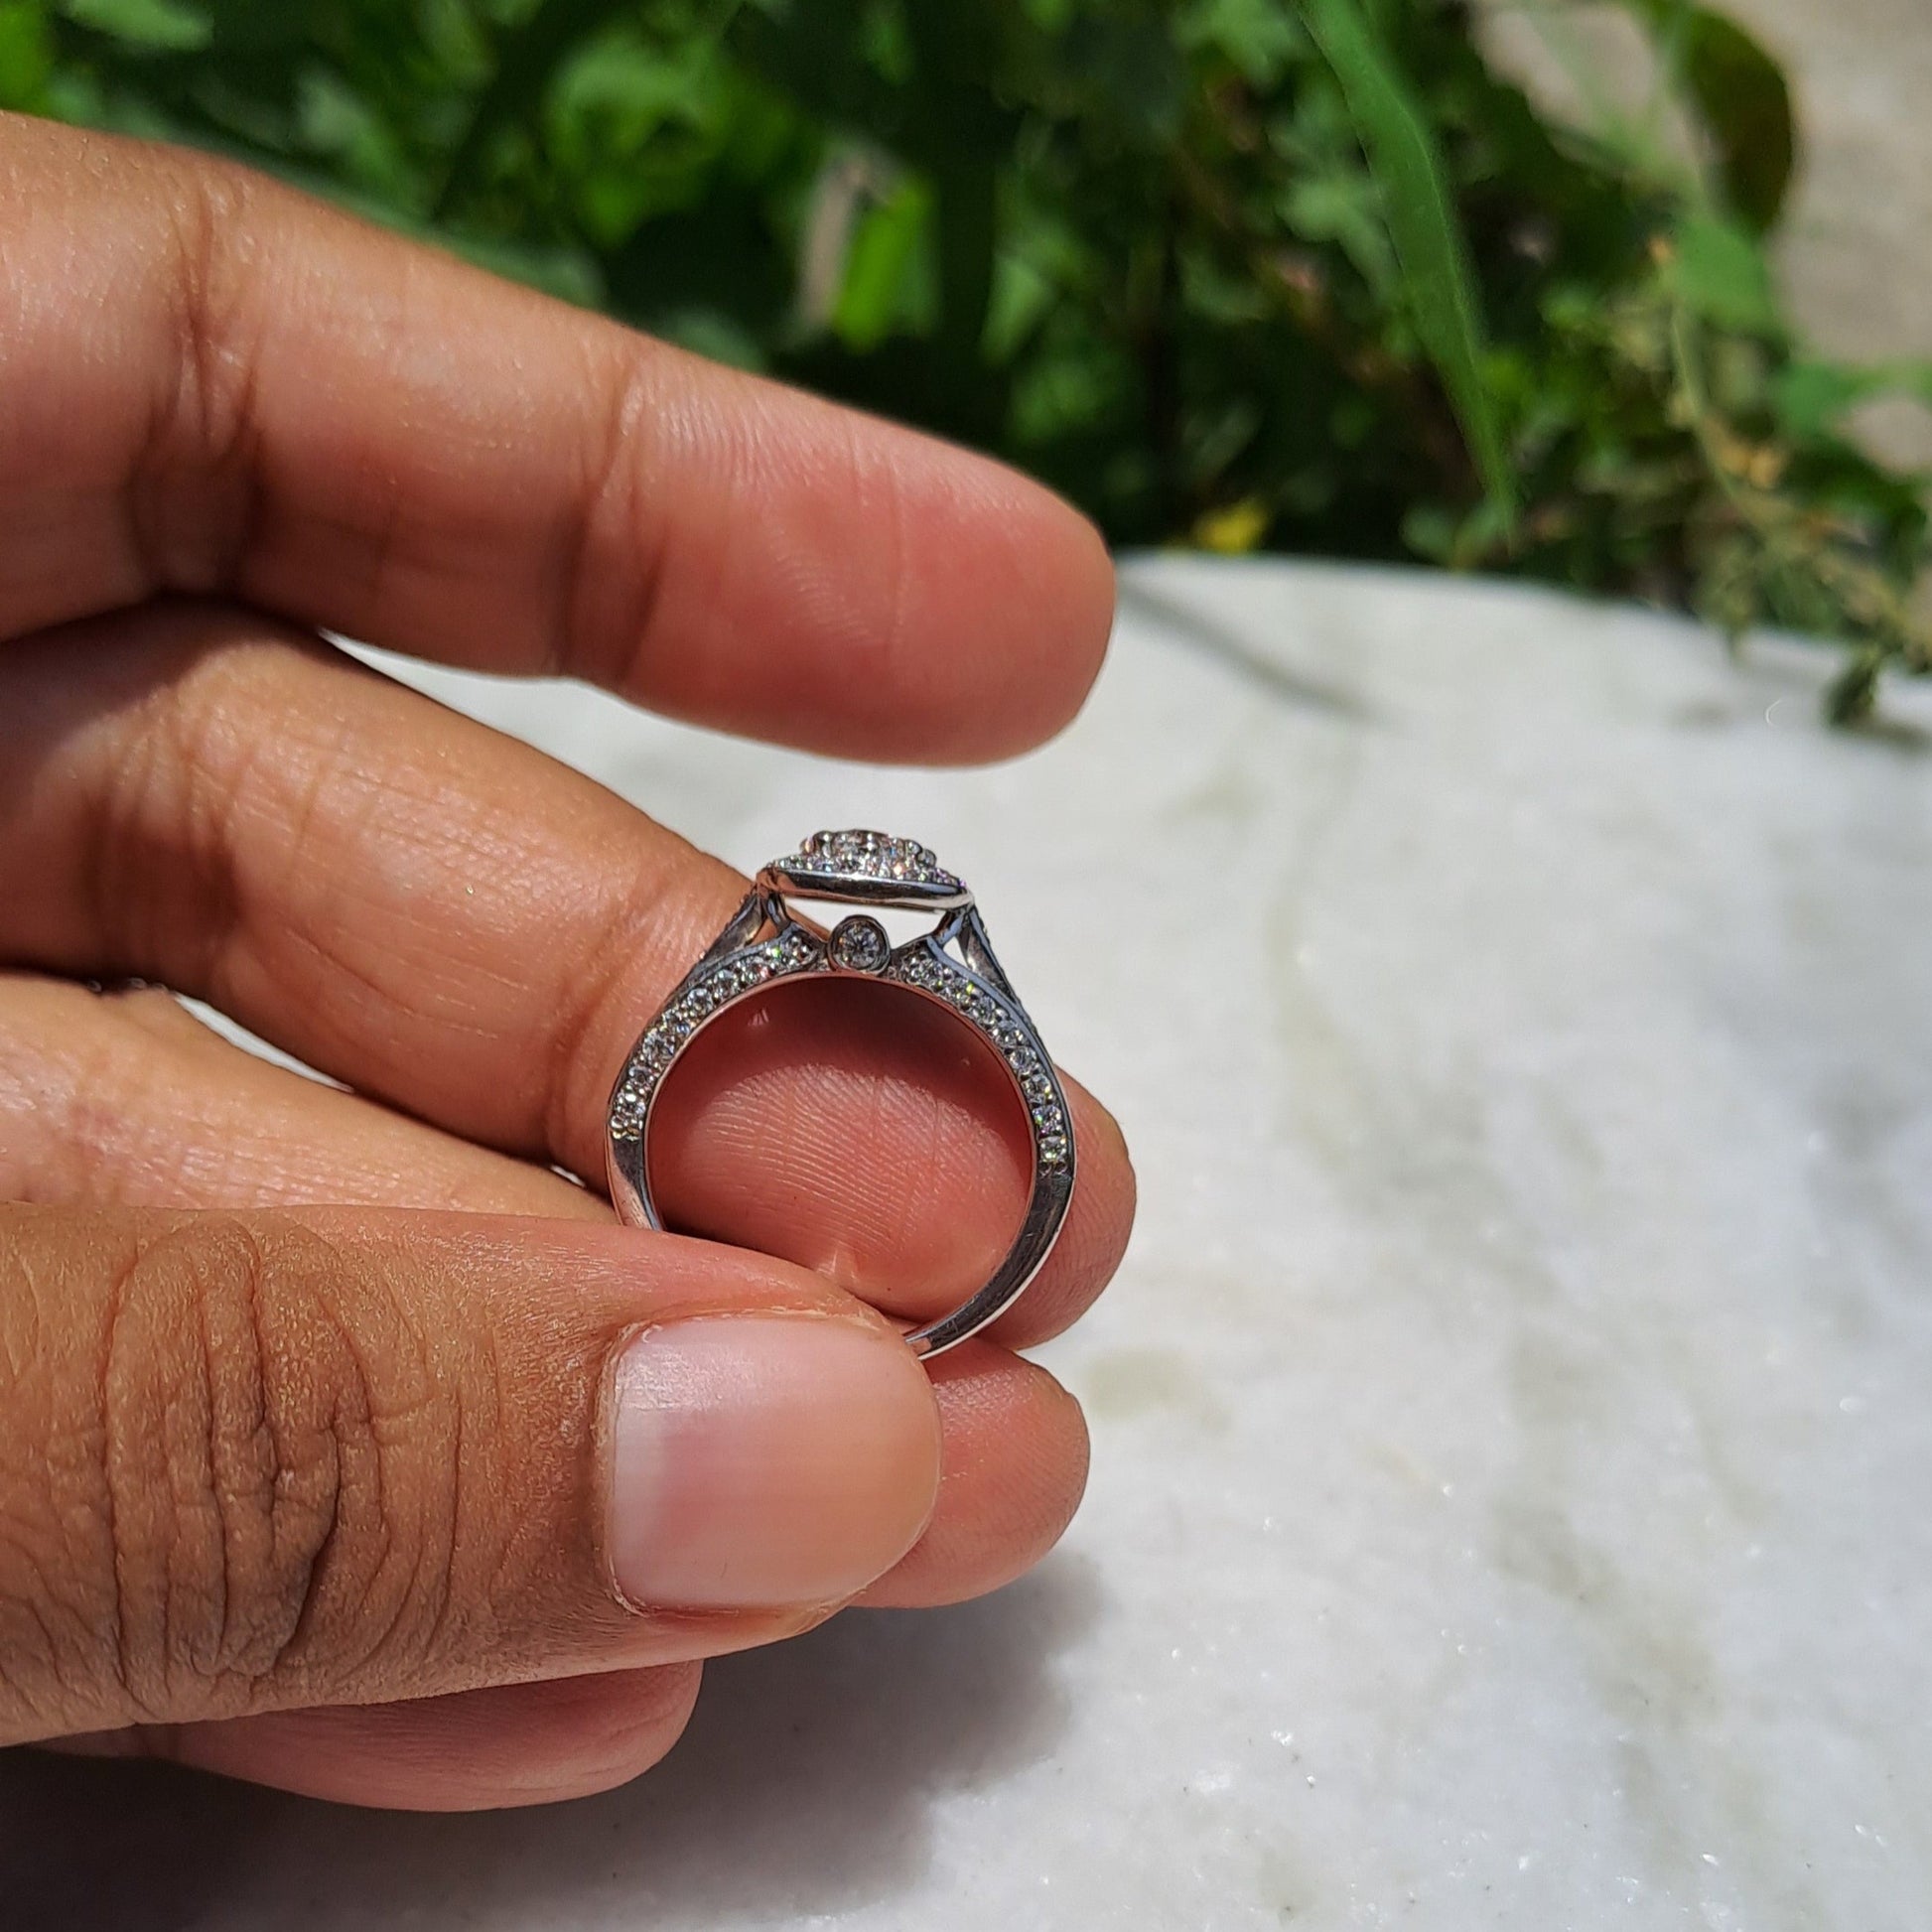 EVA Moissanite diamond Cluster Ring - 0.68 Ct - DOC001